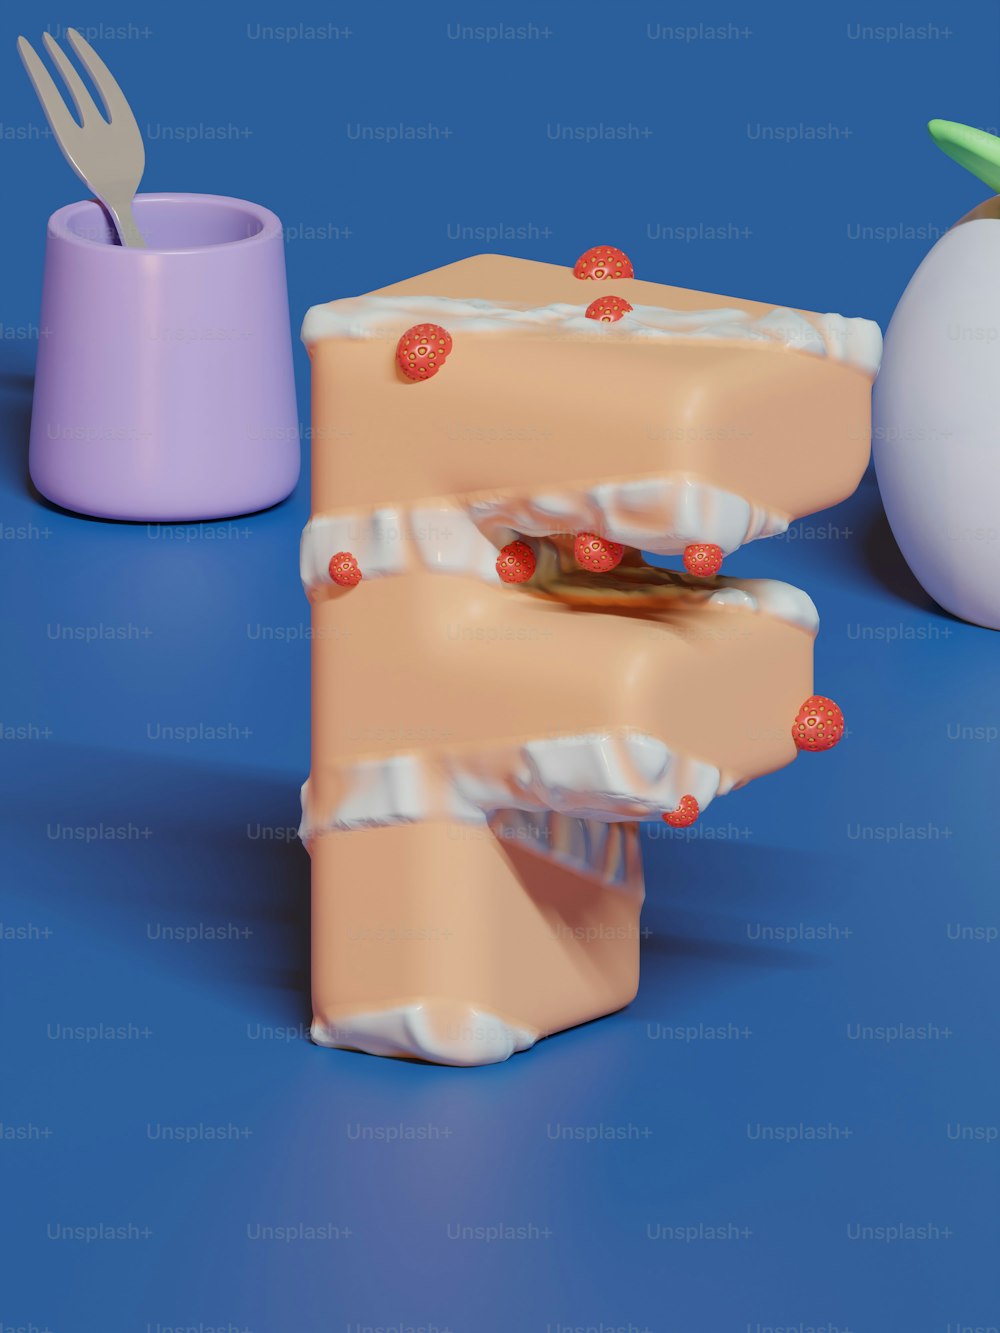 Un modèle 3D d’un morceau de gâteau avec une fourchette qui en sort